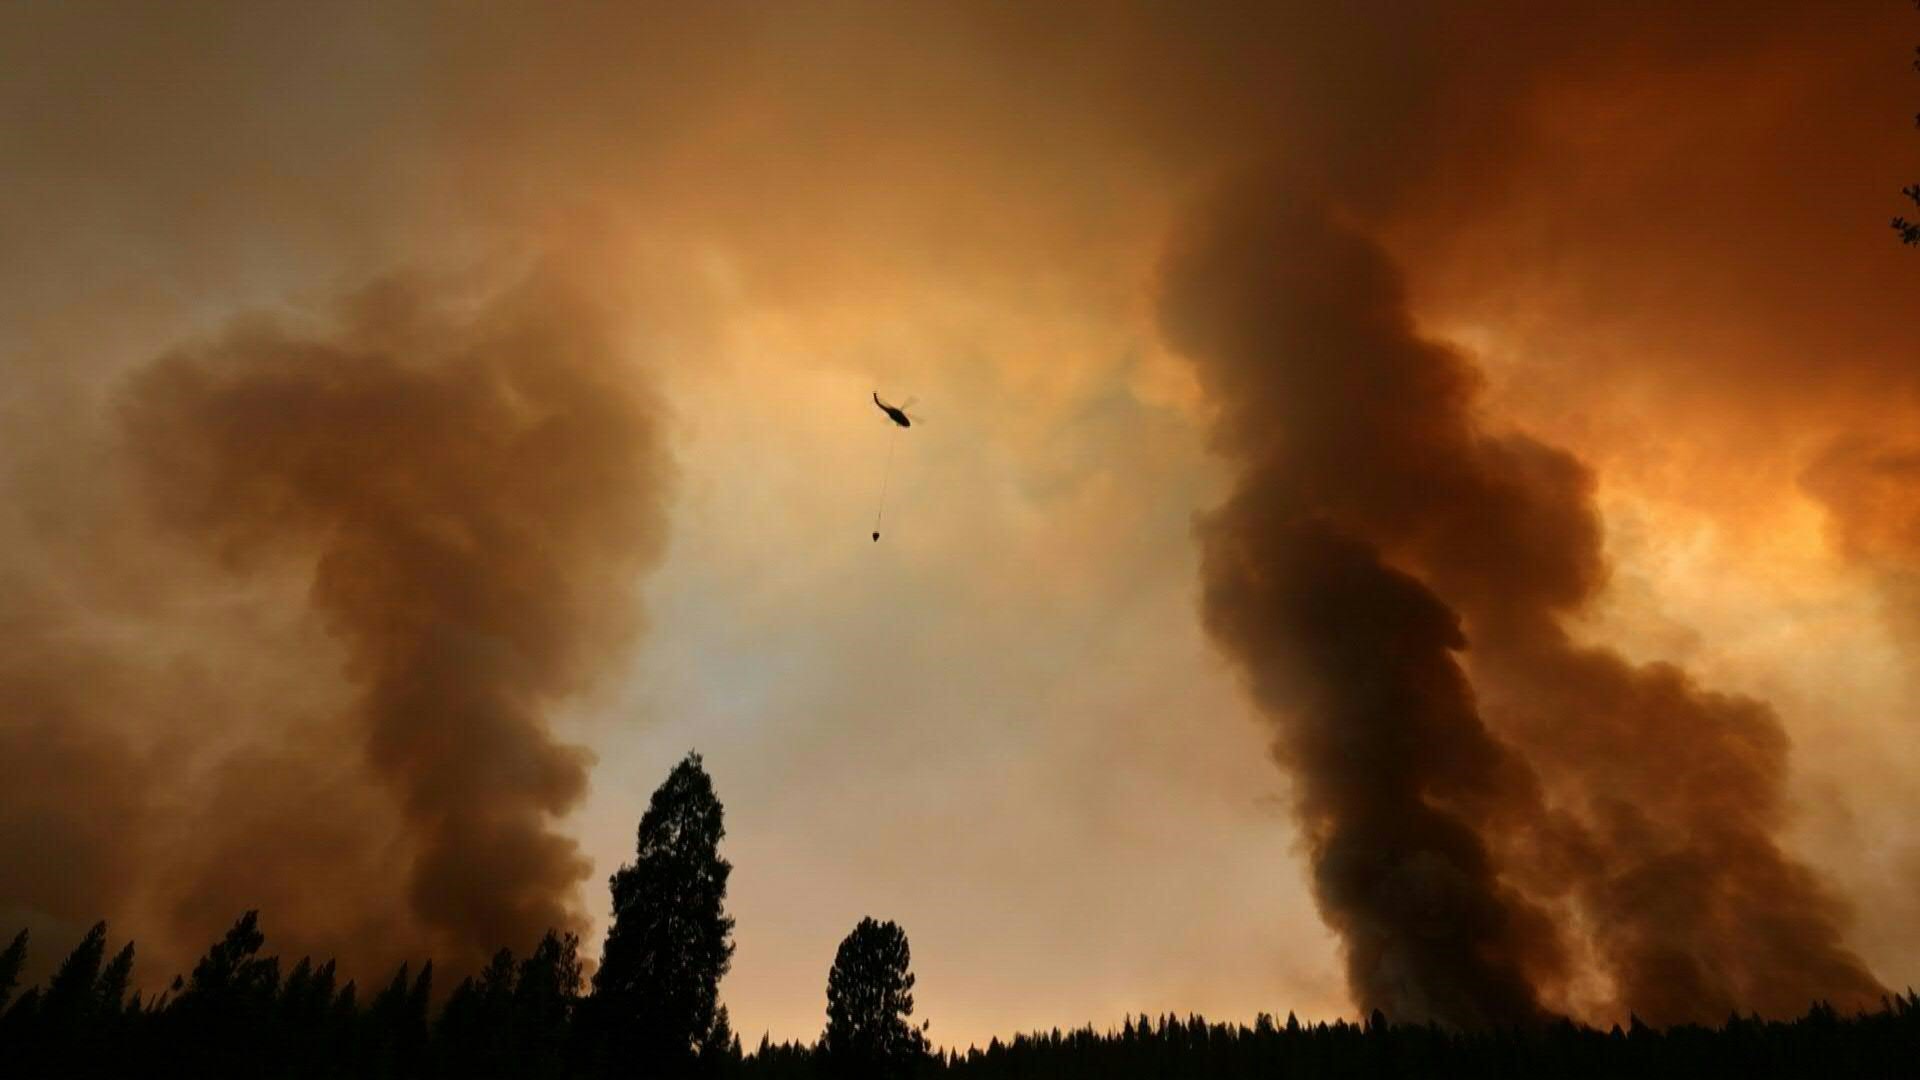 Un feroz incendio forestal en California se expandió durante la madrugada del domingo, quemando varios miles de hectáreas y obligando a realizar evacuaciones, mientras millones de estadounidenses padecen un calor abrasador que bate récords y se espera que se intensifique.